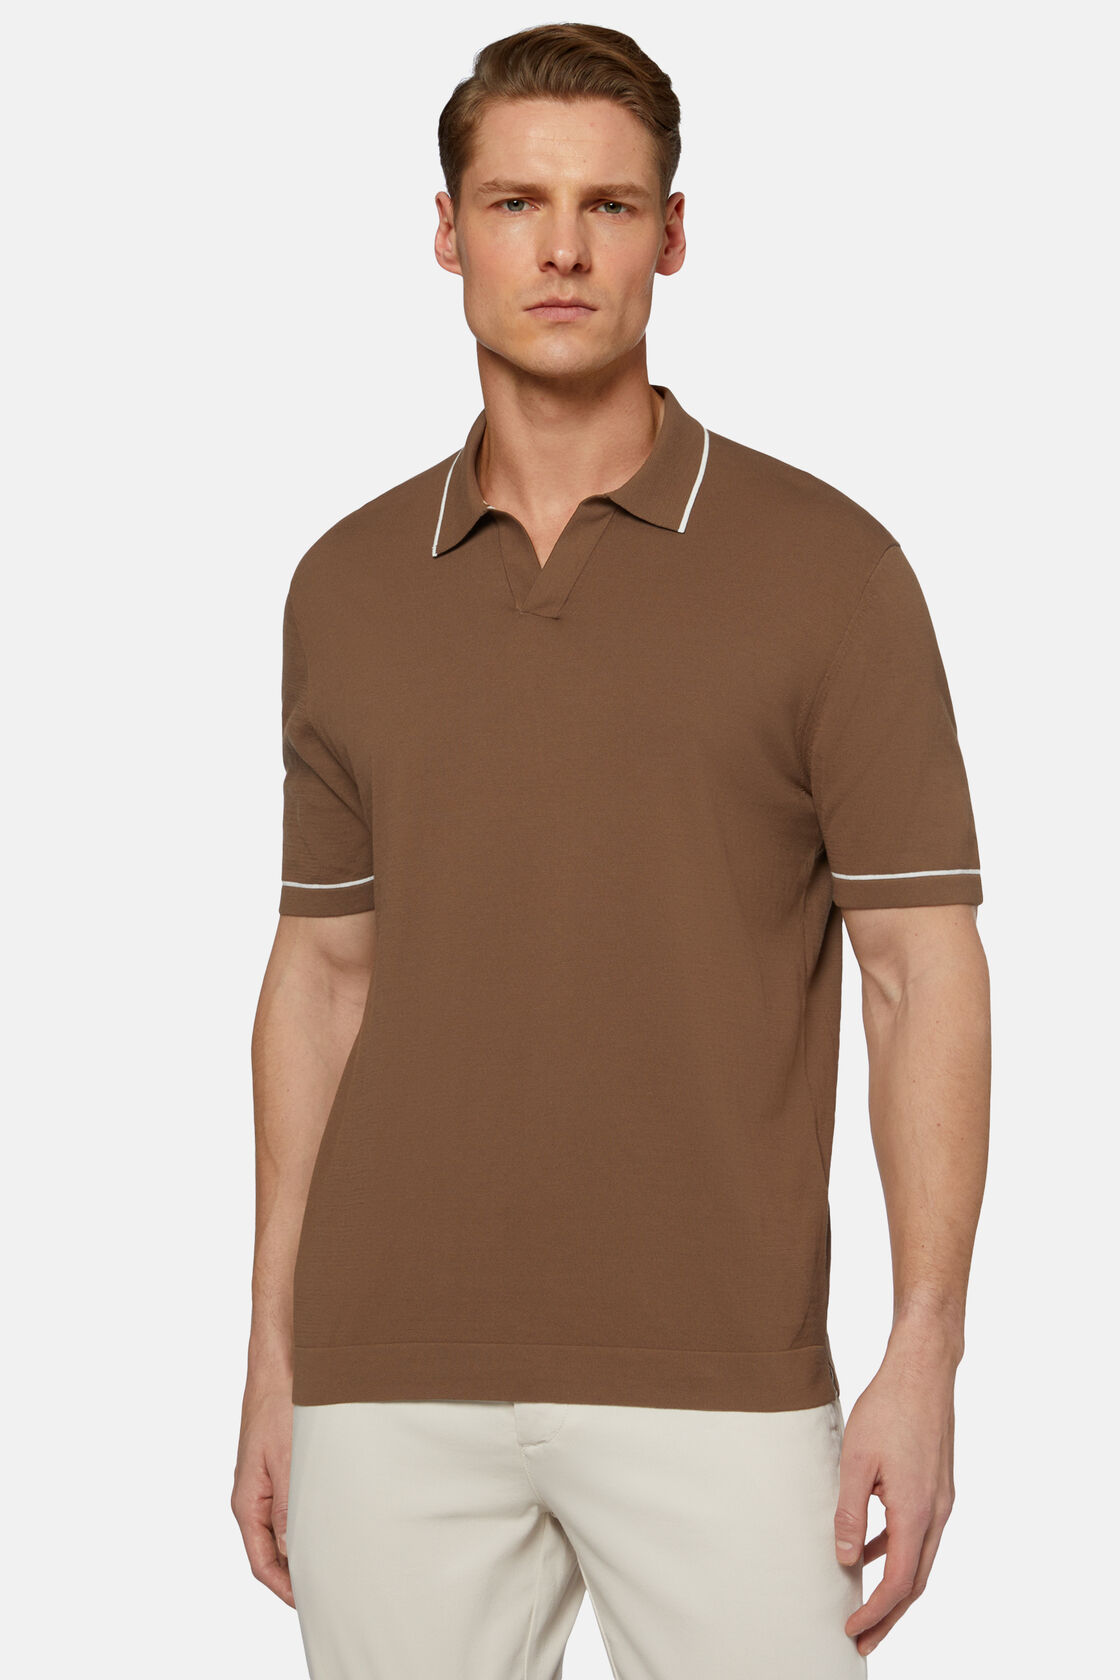 Braunes Strick-Poloshirt Aus Baumwollkrepp, Braun, hi-res